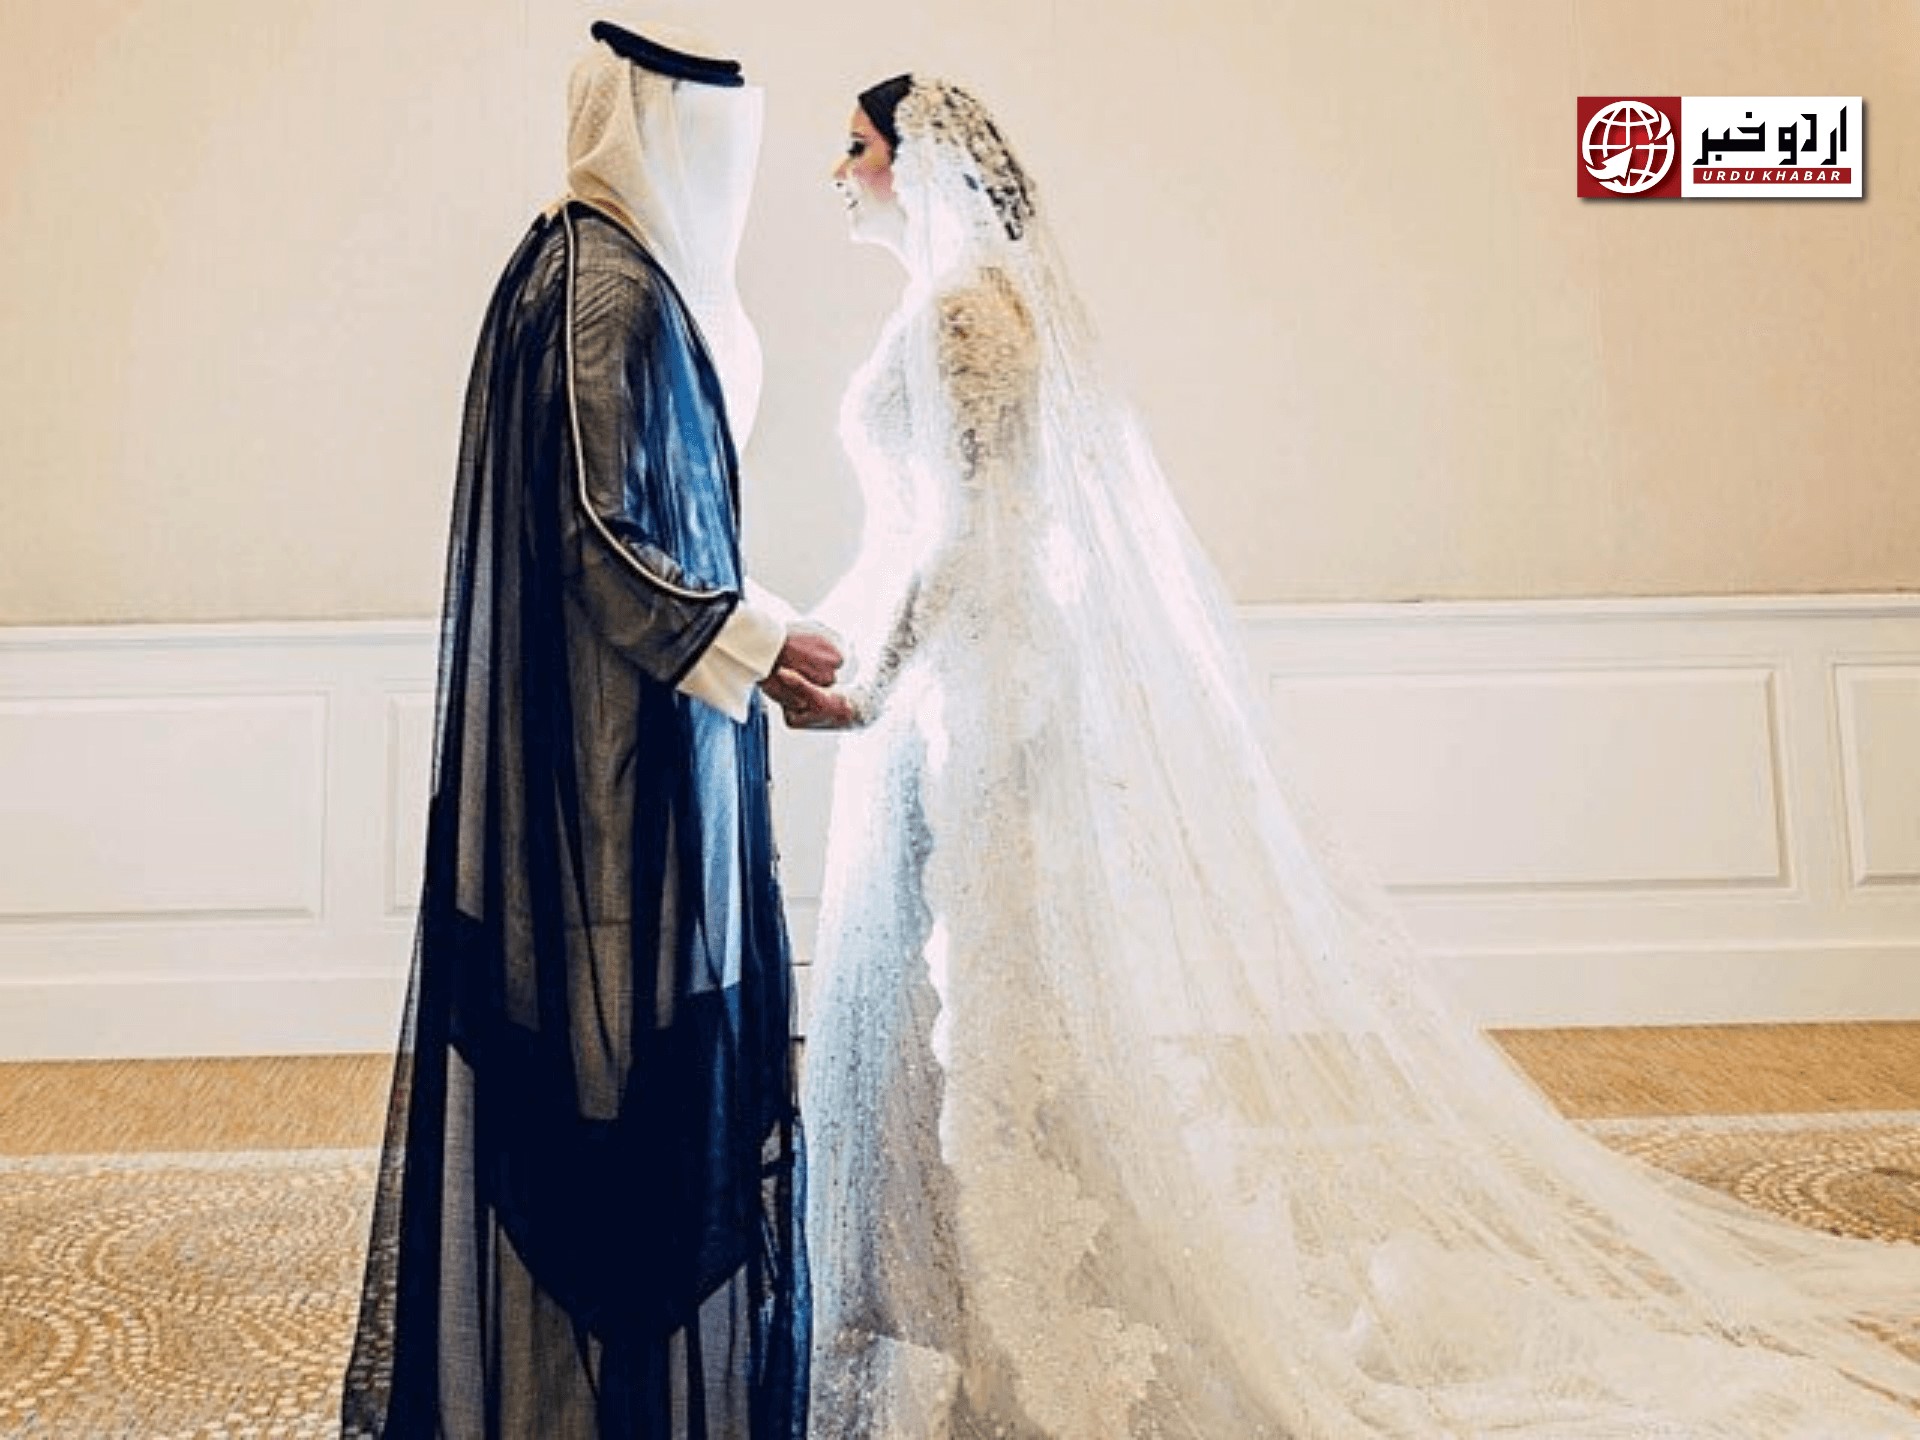 سعودی عرب میں زوم پر شادی